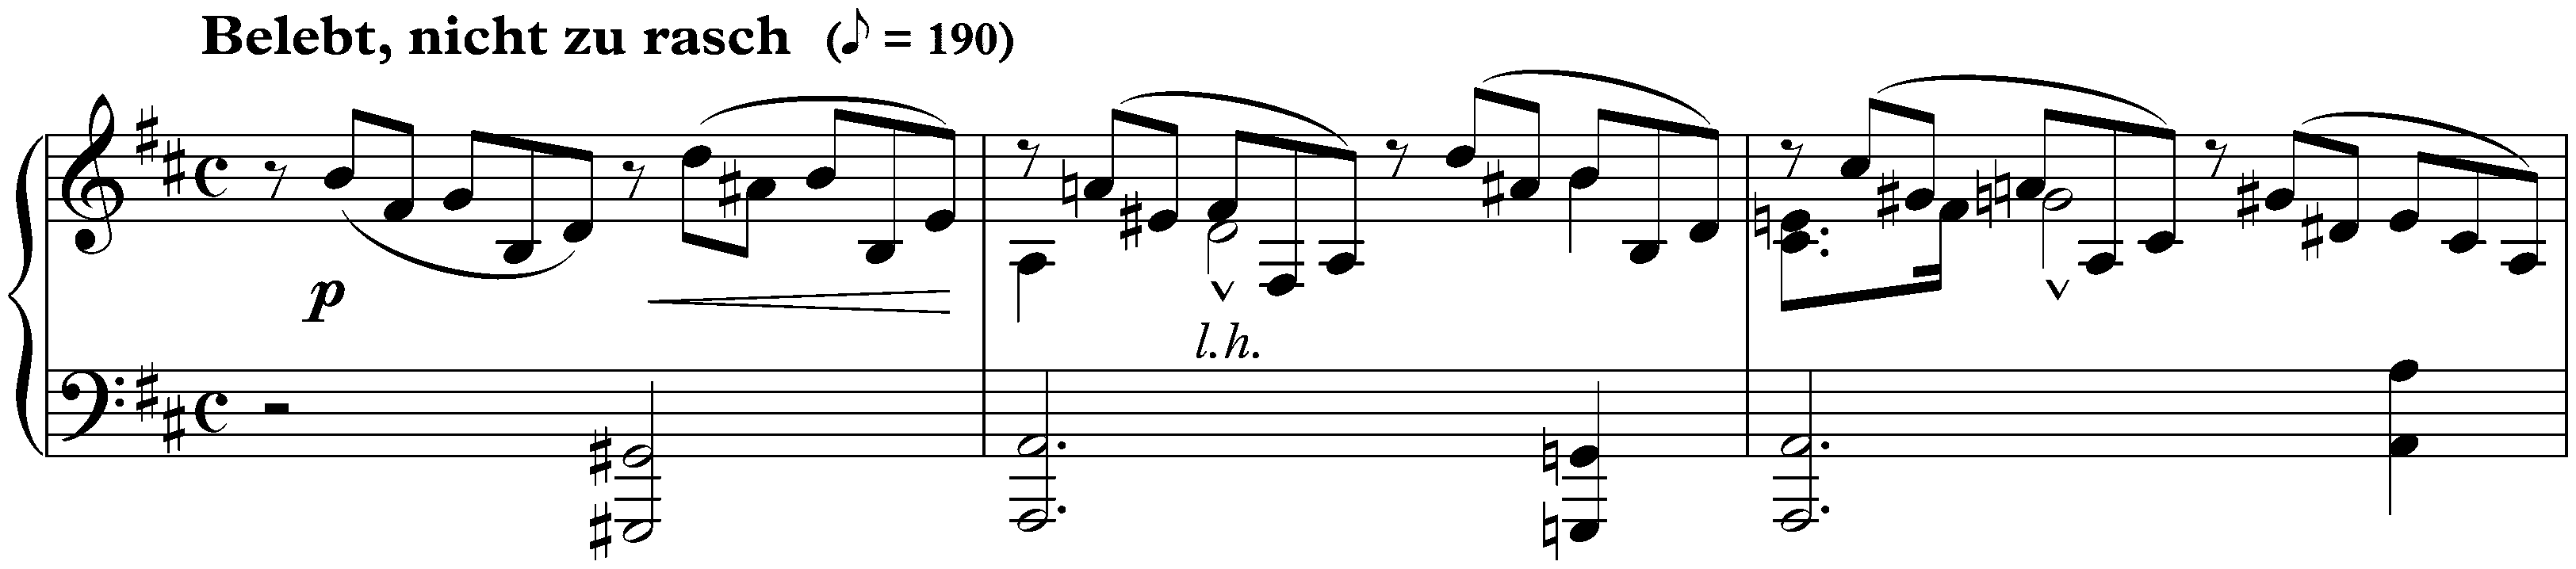 Gesänge der Frühe, op. 133; 2. Belebt, nicht zu rasch